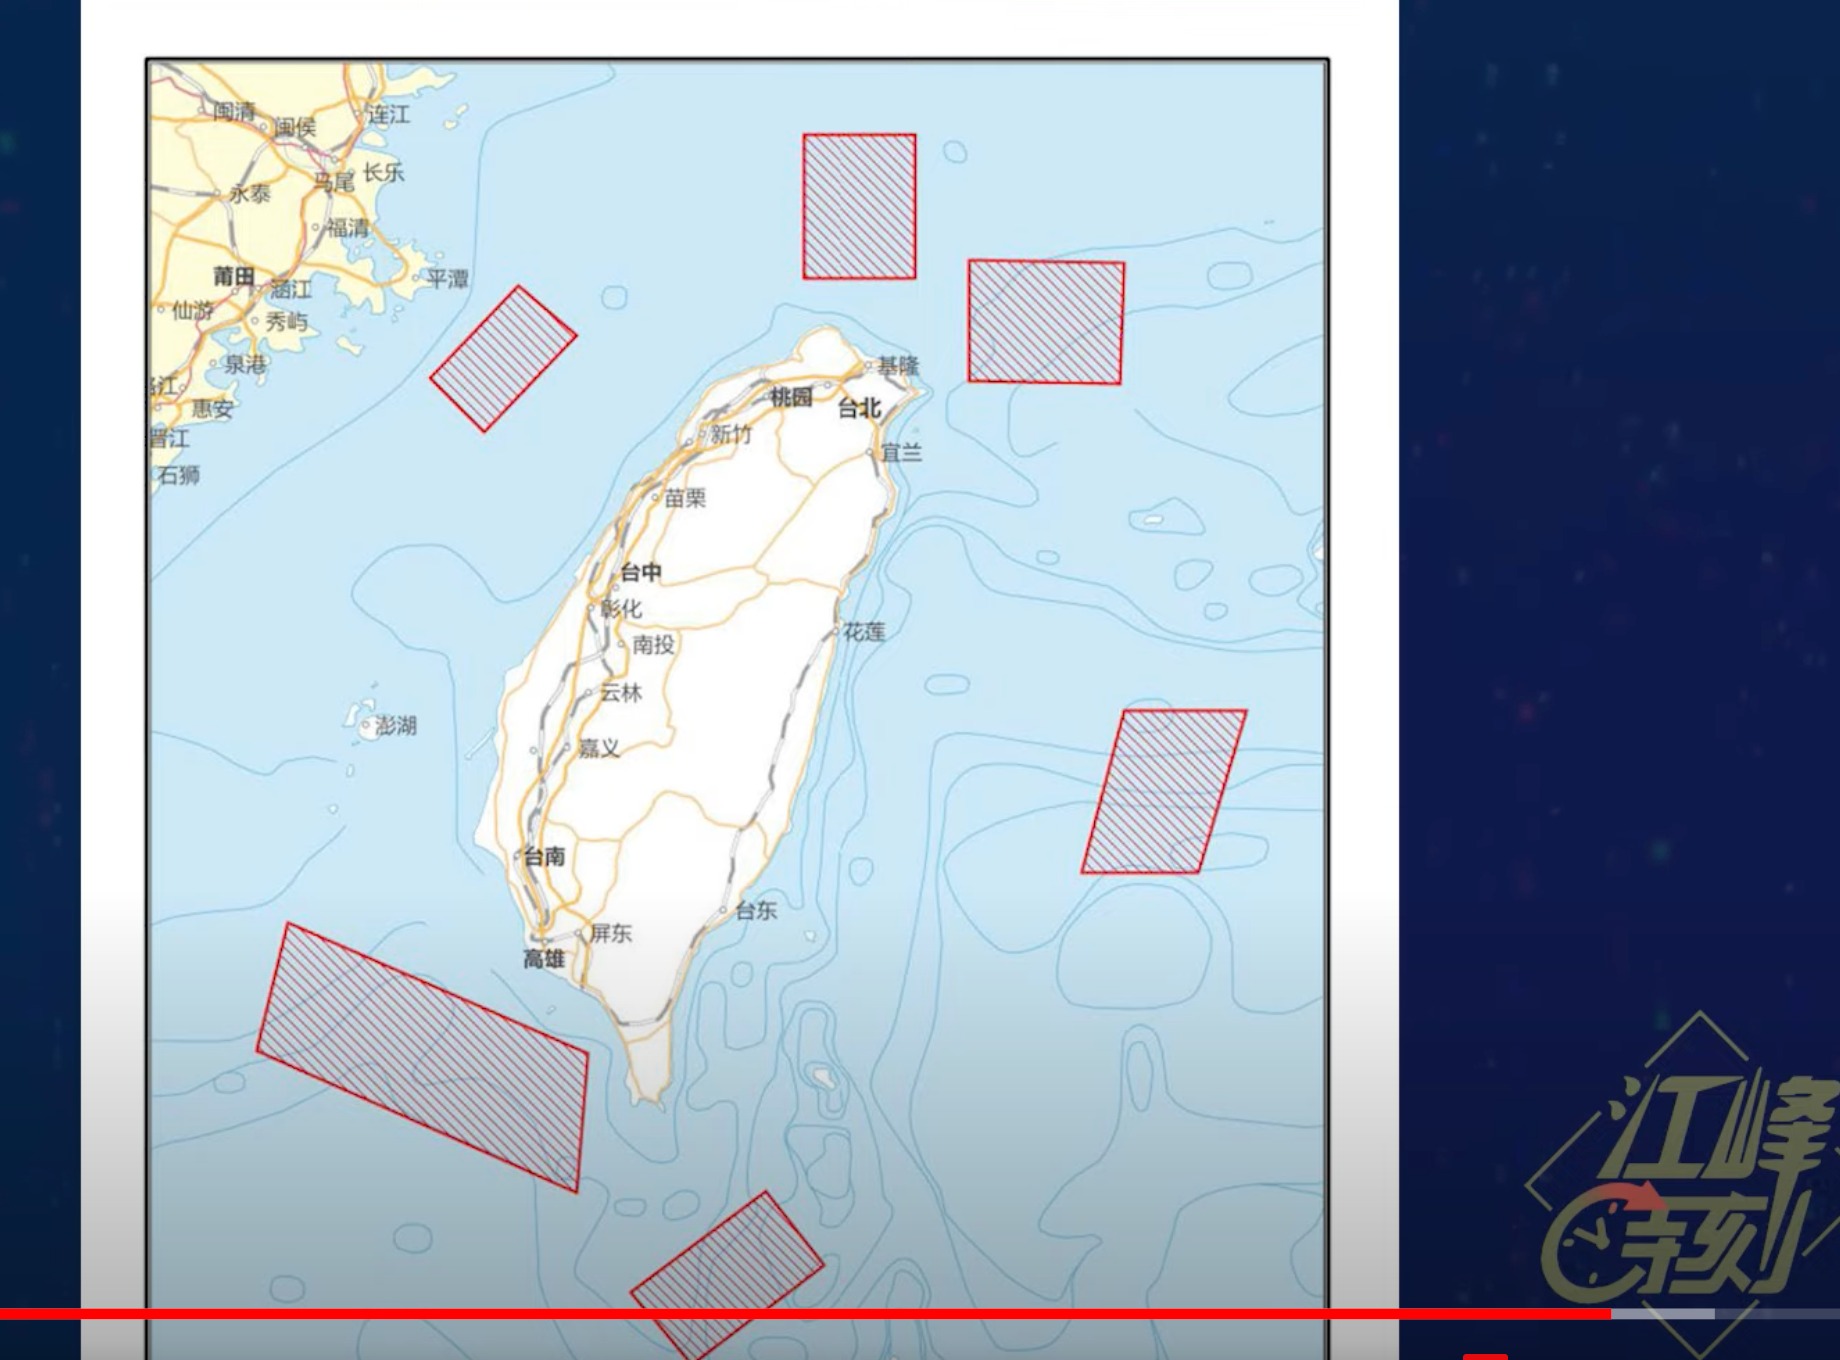 中共8月4日开始围绕台湾海域军演